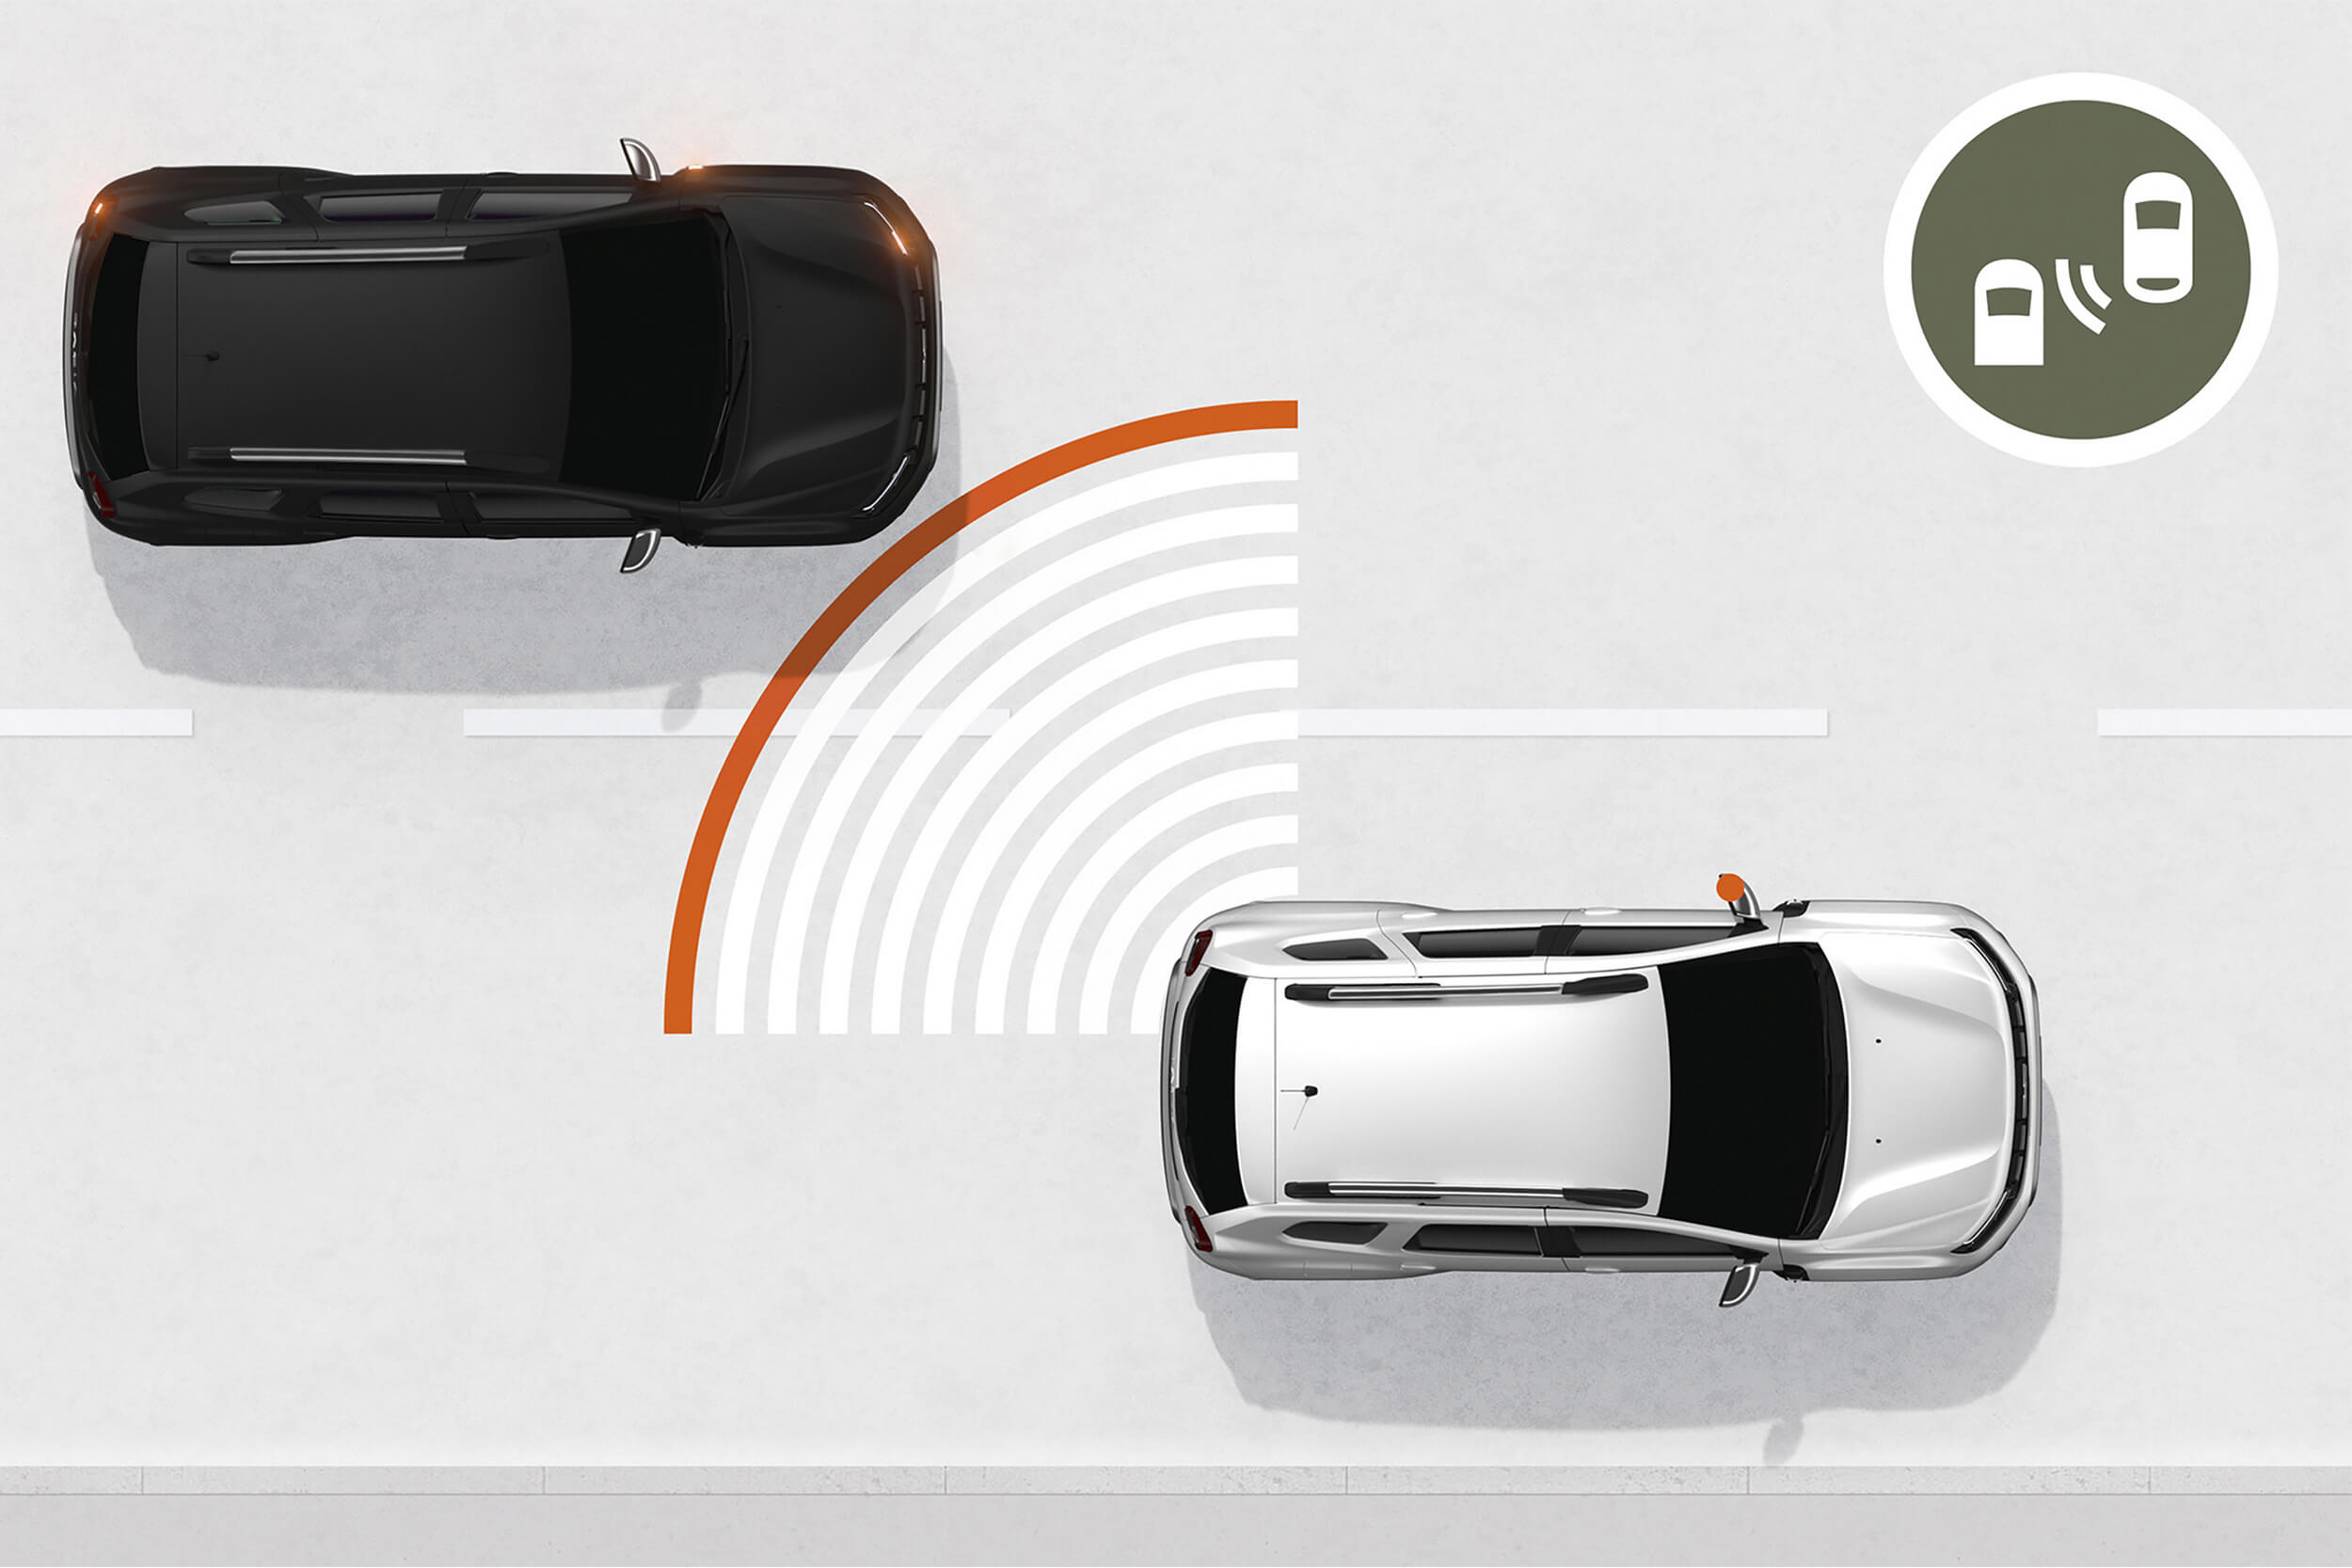 Grafinėje iliustracijoje pavaizduotas baltas Dacia Duster visureigis, veikia aklųjų zonų stebėjimo sistema